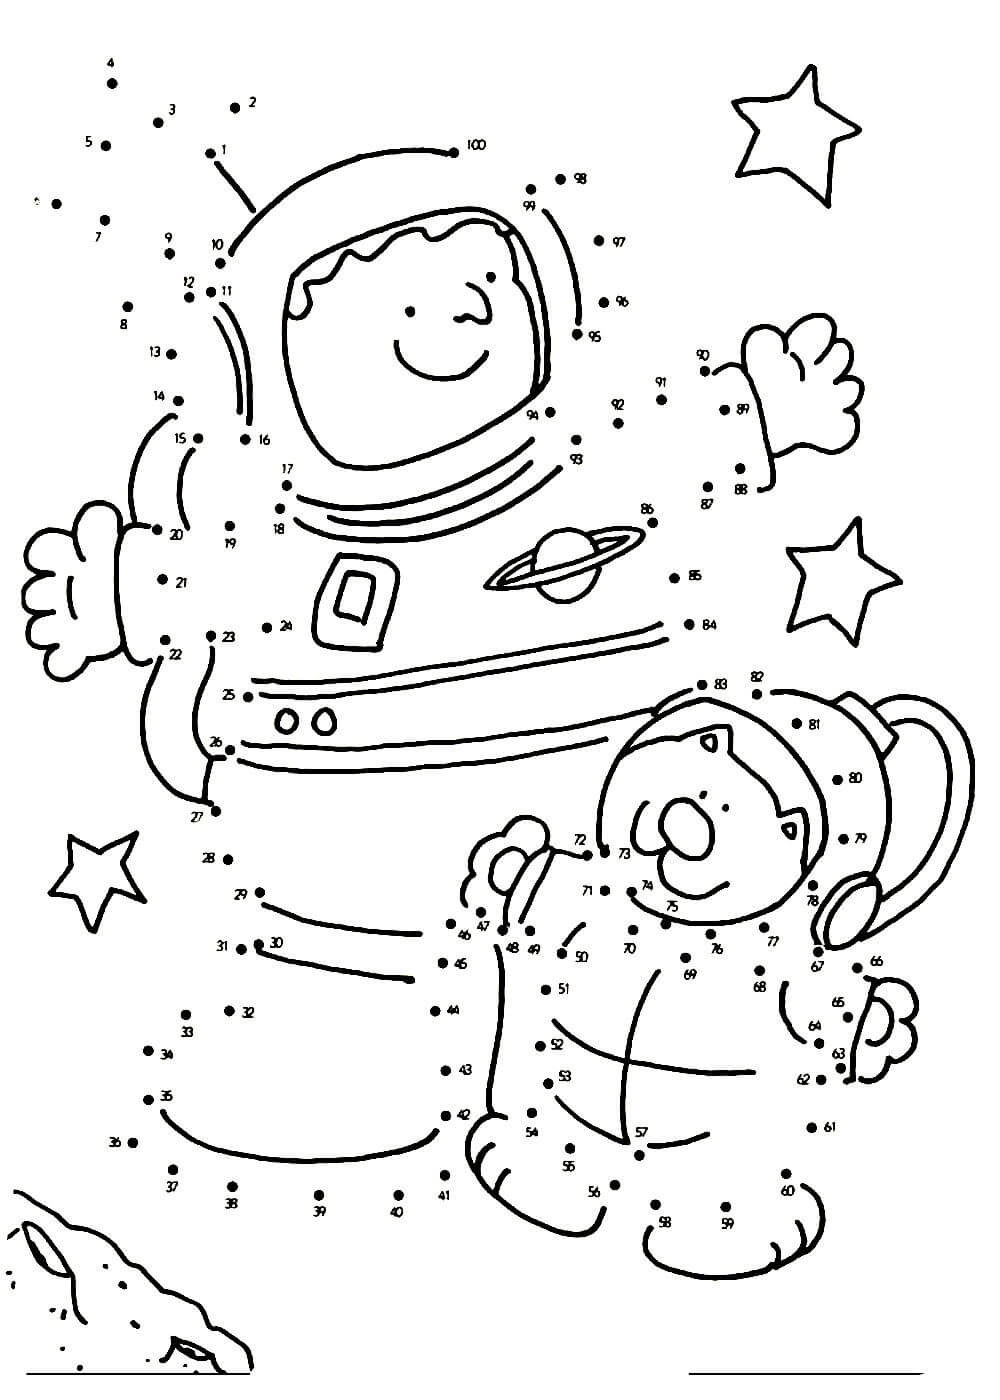 Тема космос для детей 7 лет. Раскраска. В космосе. Космос раскраска для детей. Космонавтика раскраски для детей. Раскраска для малышей. Космос.